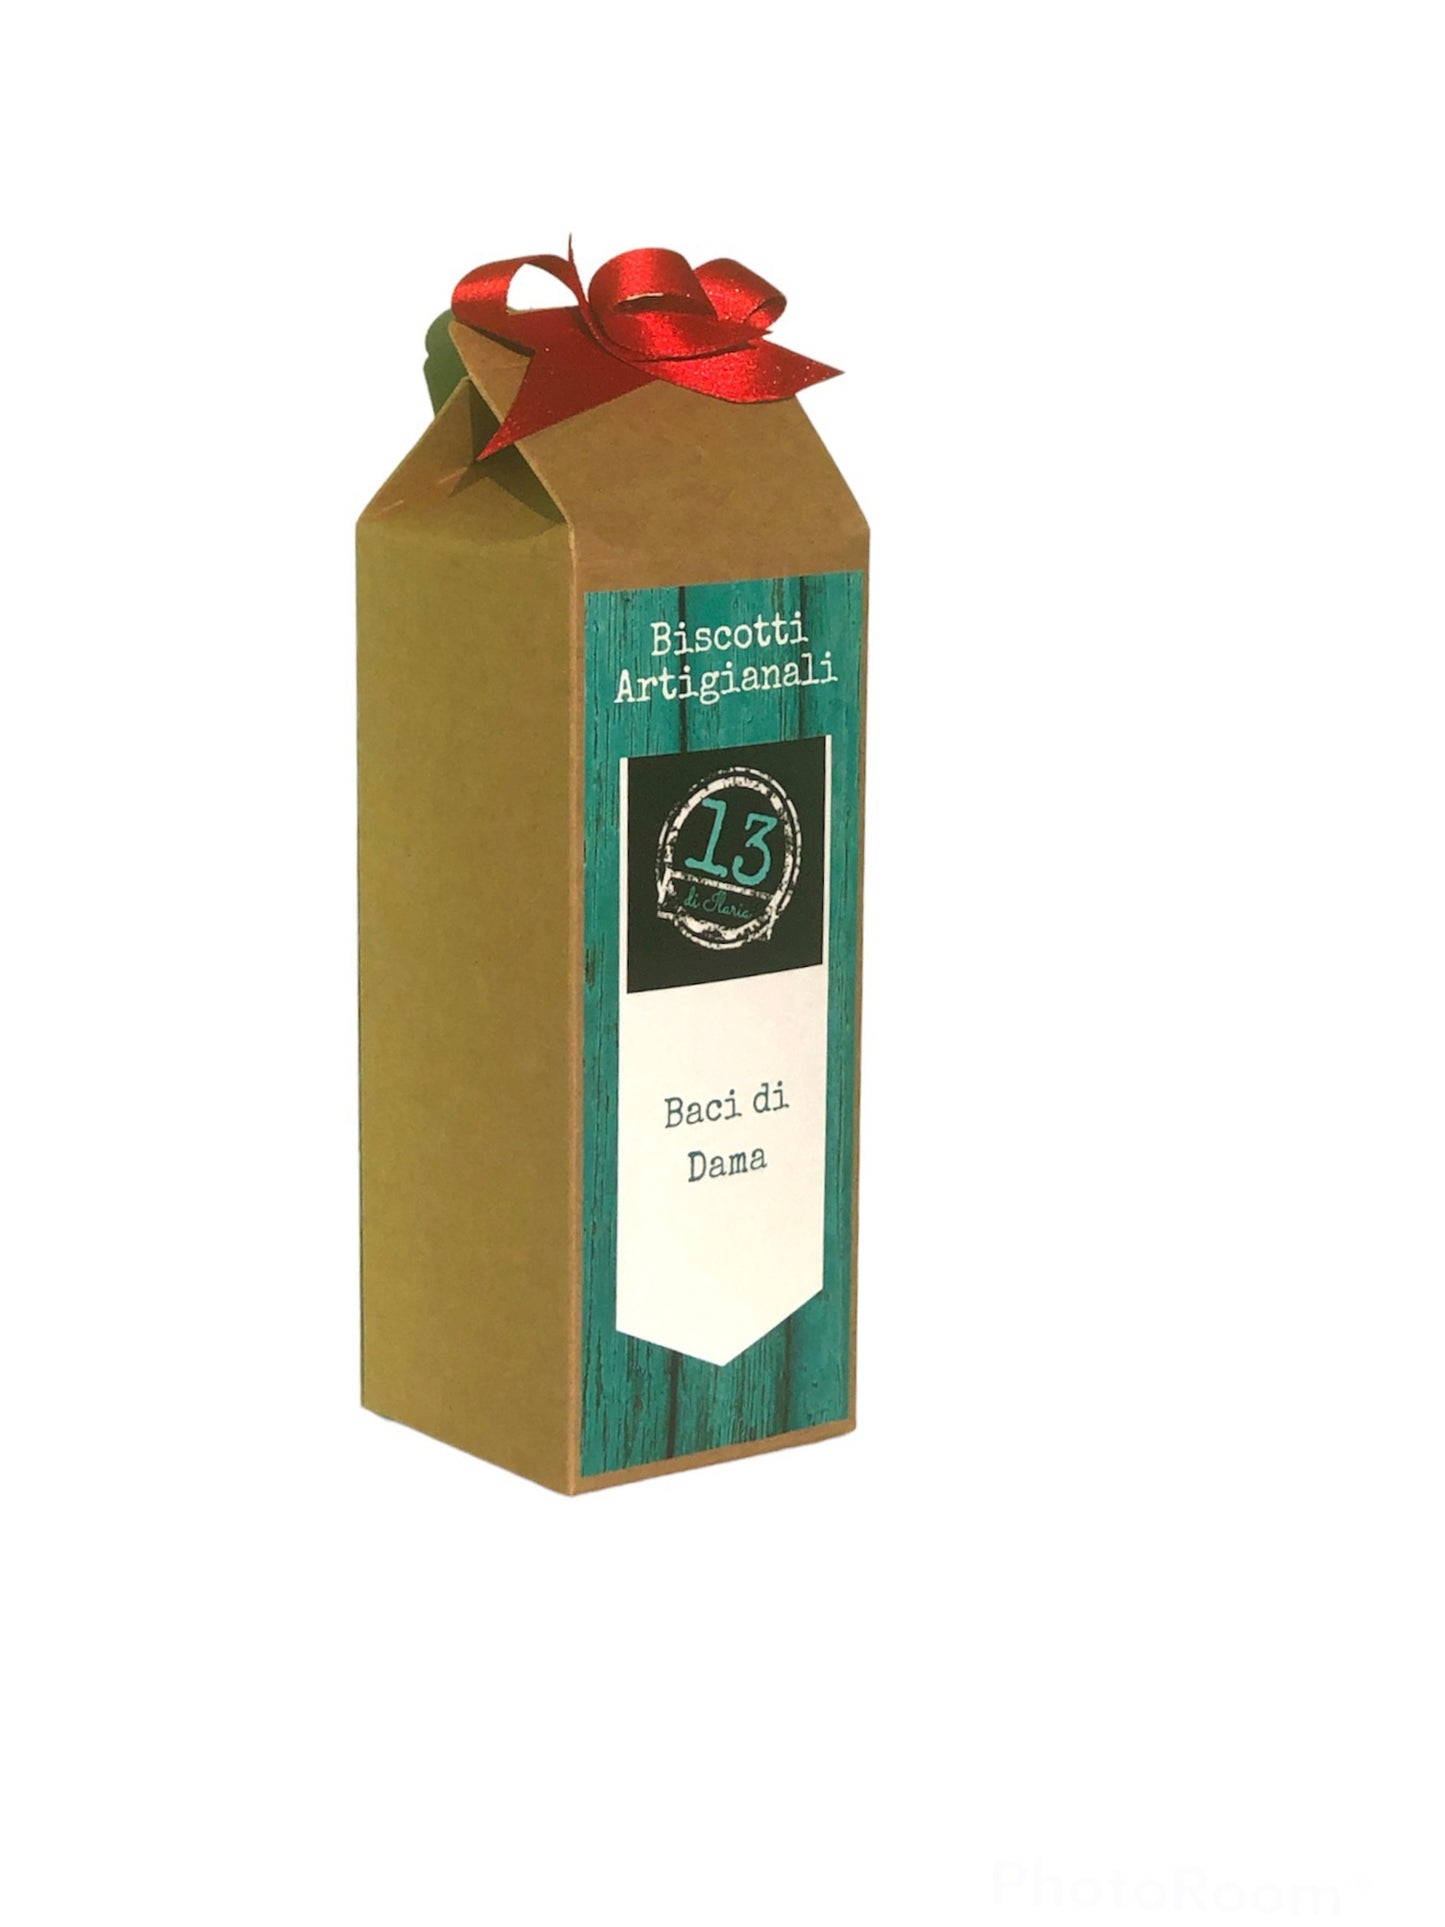 Idea Regalo per Natale - Confezione Contenente un pacco di Biscotti Artigianali (in 4 varianti) prodotti da Biscottificio Piemontese